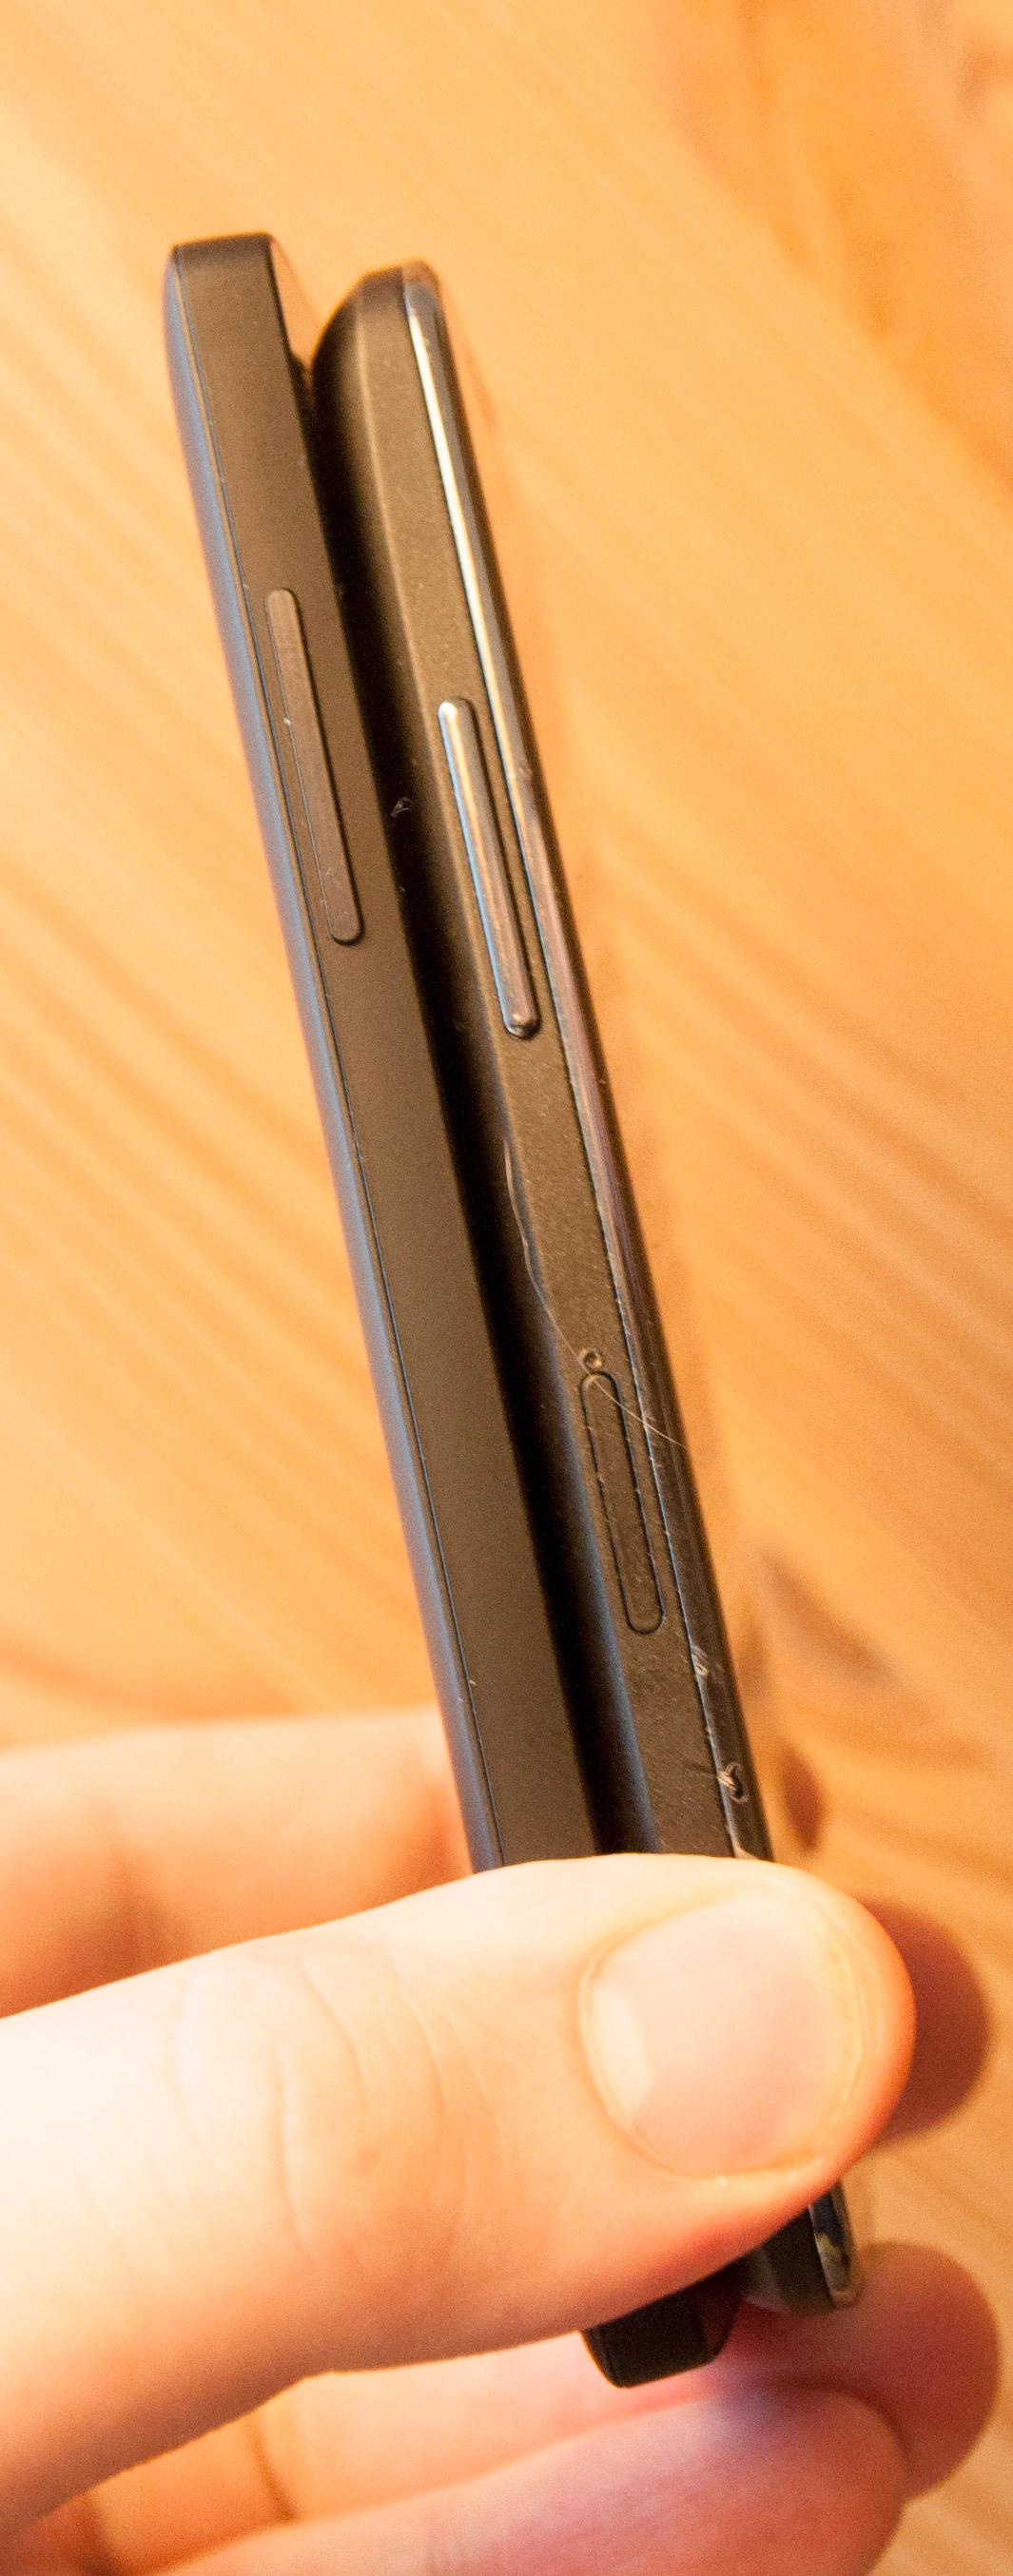 Nexus 5 til venstre, og Nexus 4 til høyre.Foto: Finn Jarle Kvalheim, Amobil.no